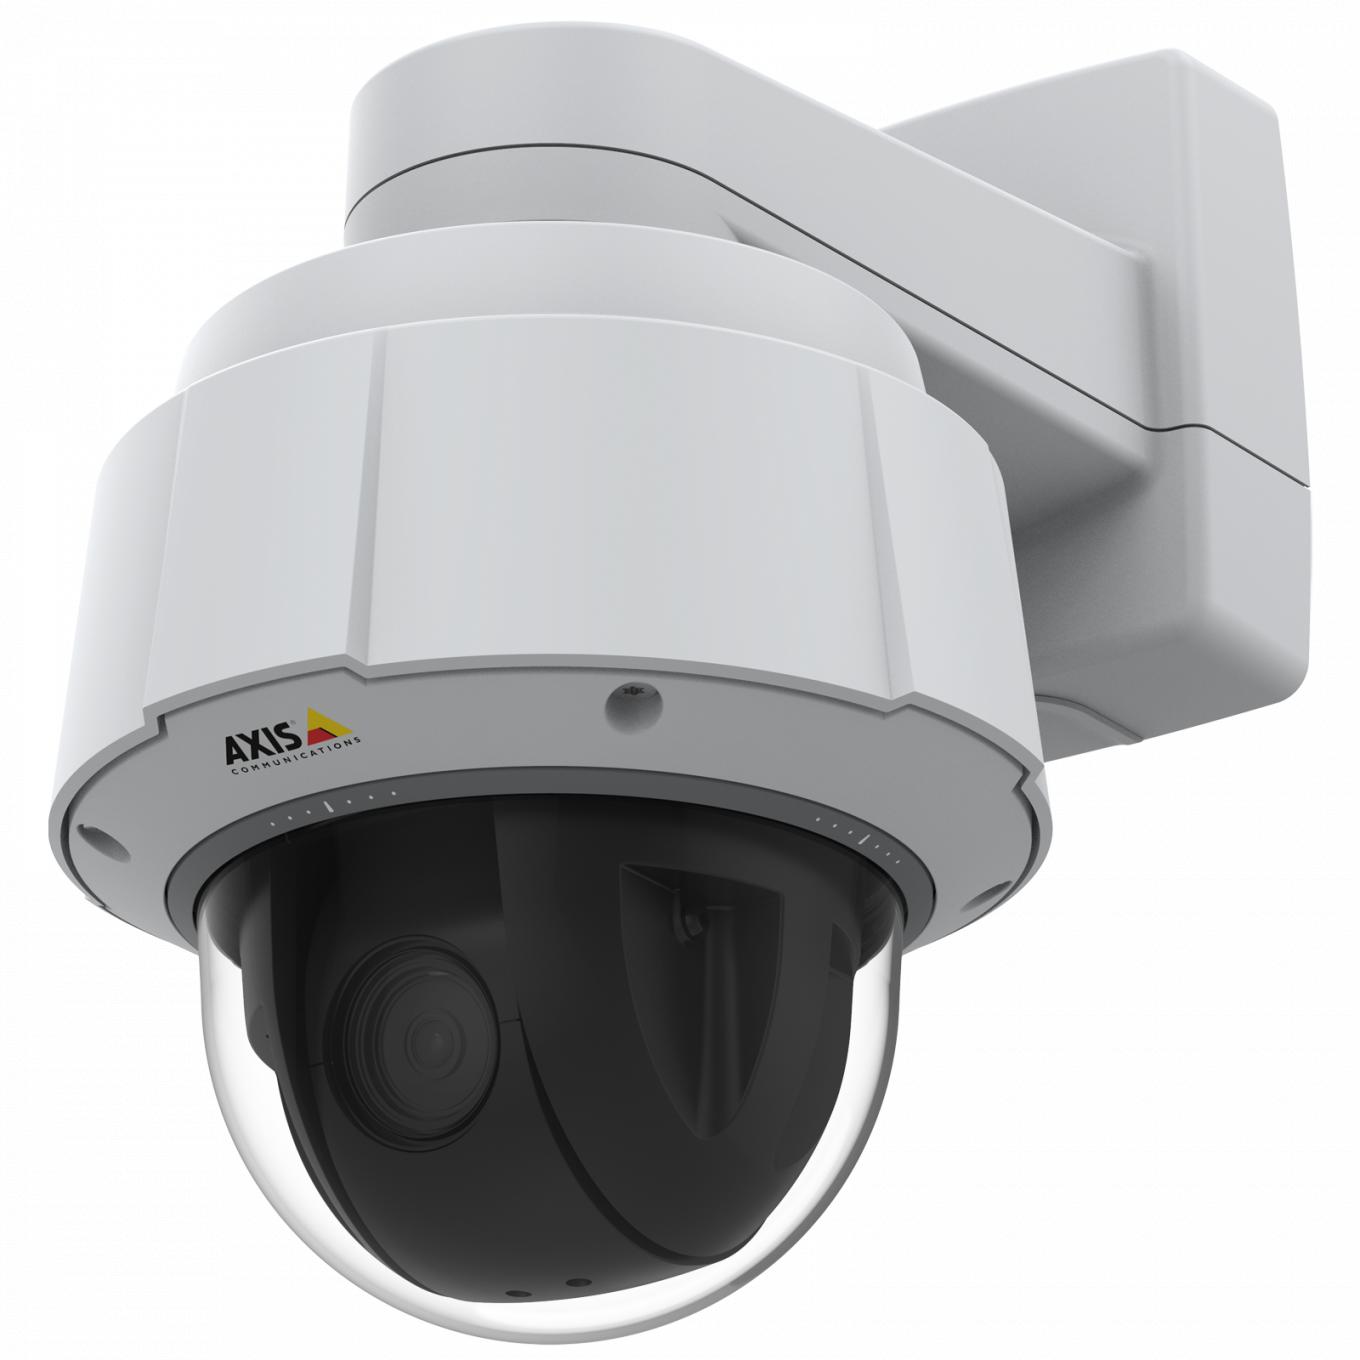 Axis IP Camera Q6075-E è dotata di TPM, con certificazione FIPS 140-2 livello 2